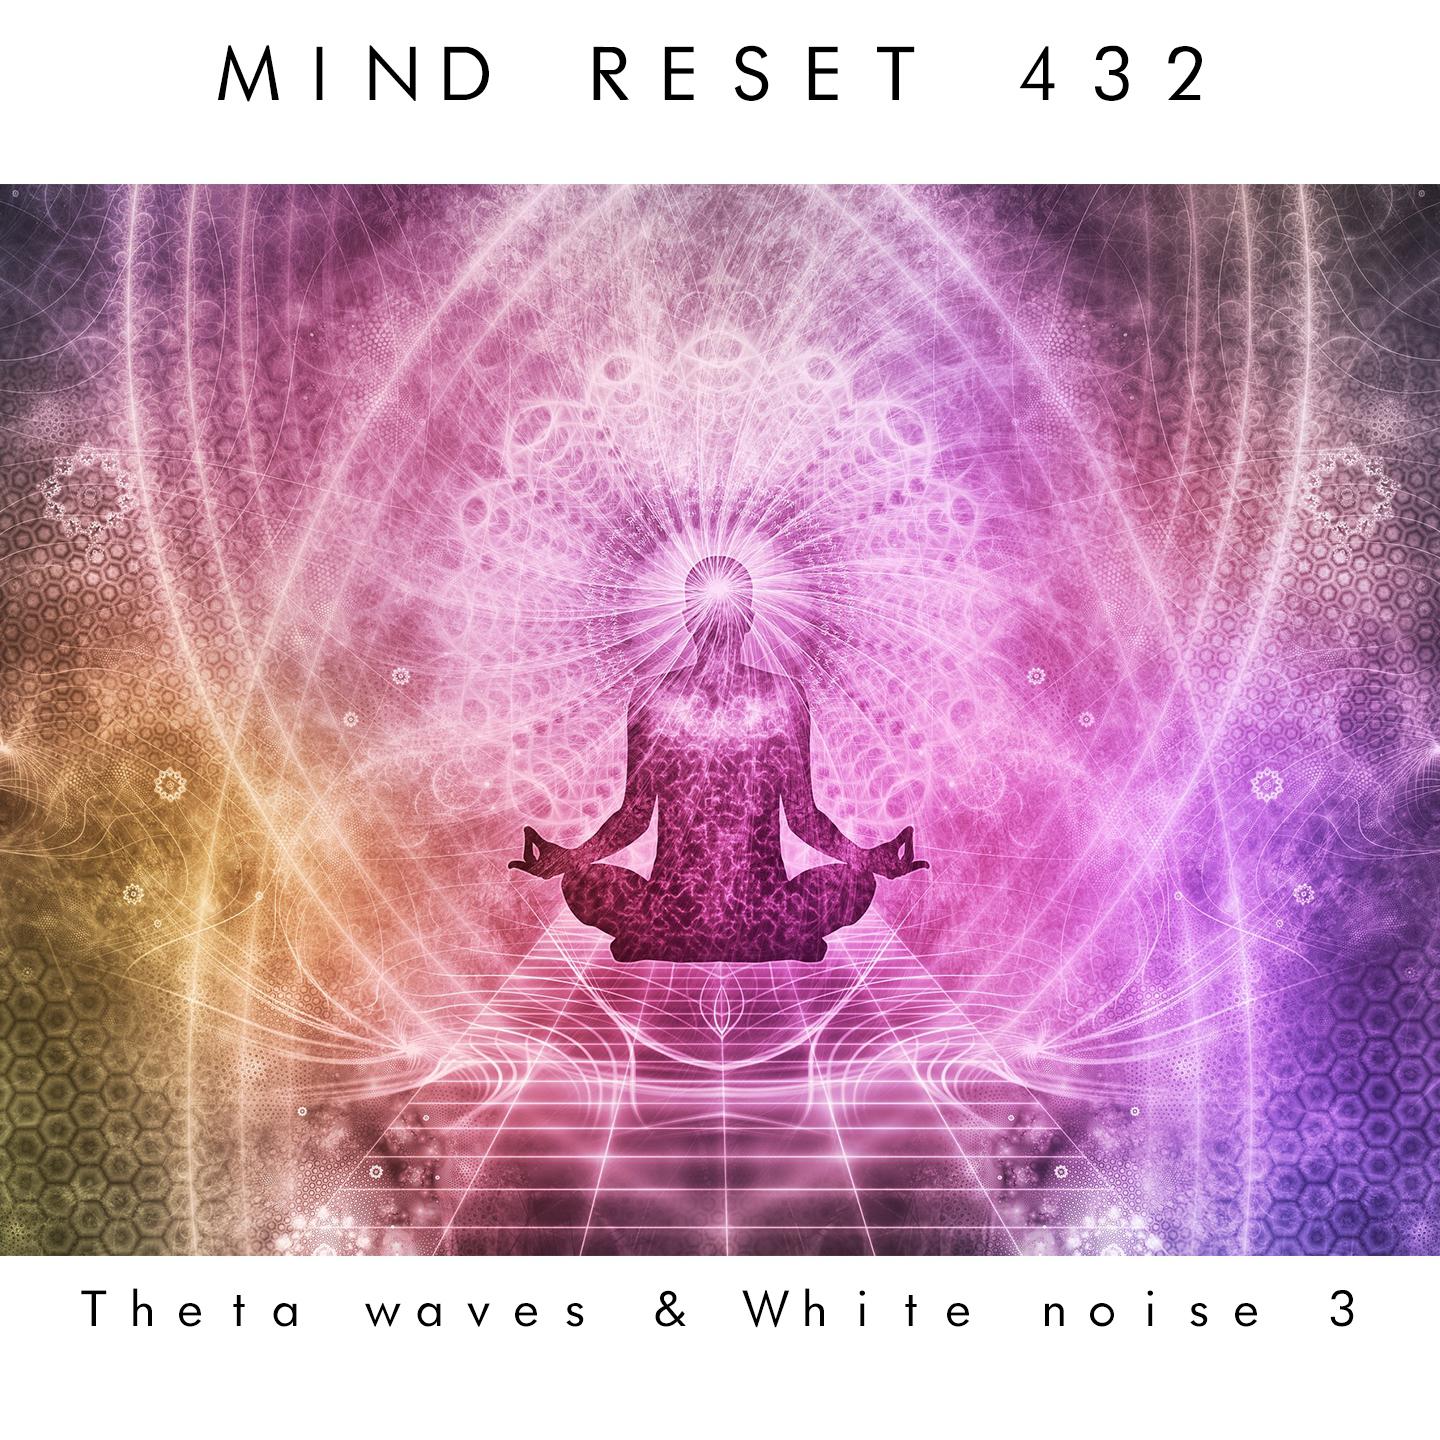 Theta waves & white noise 3